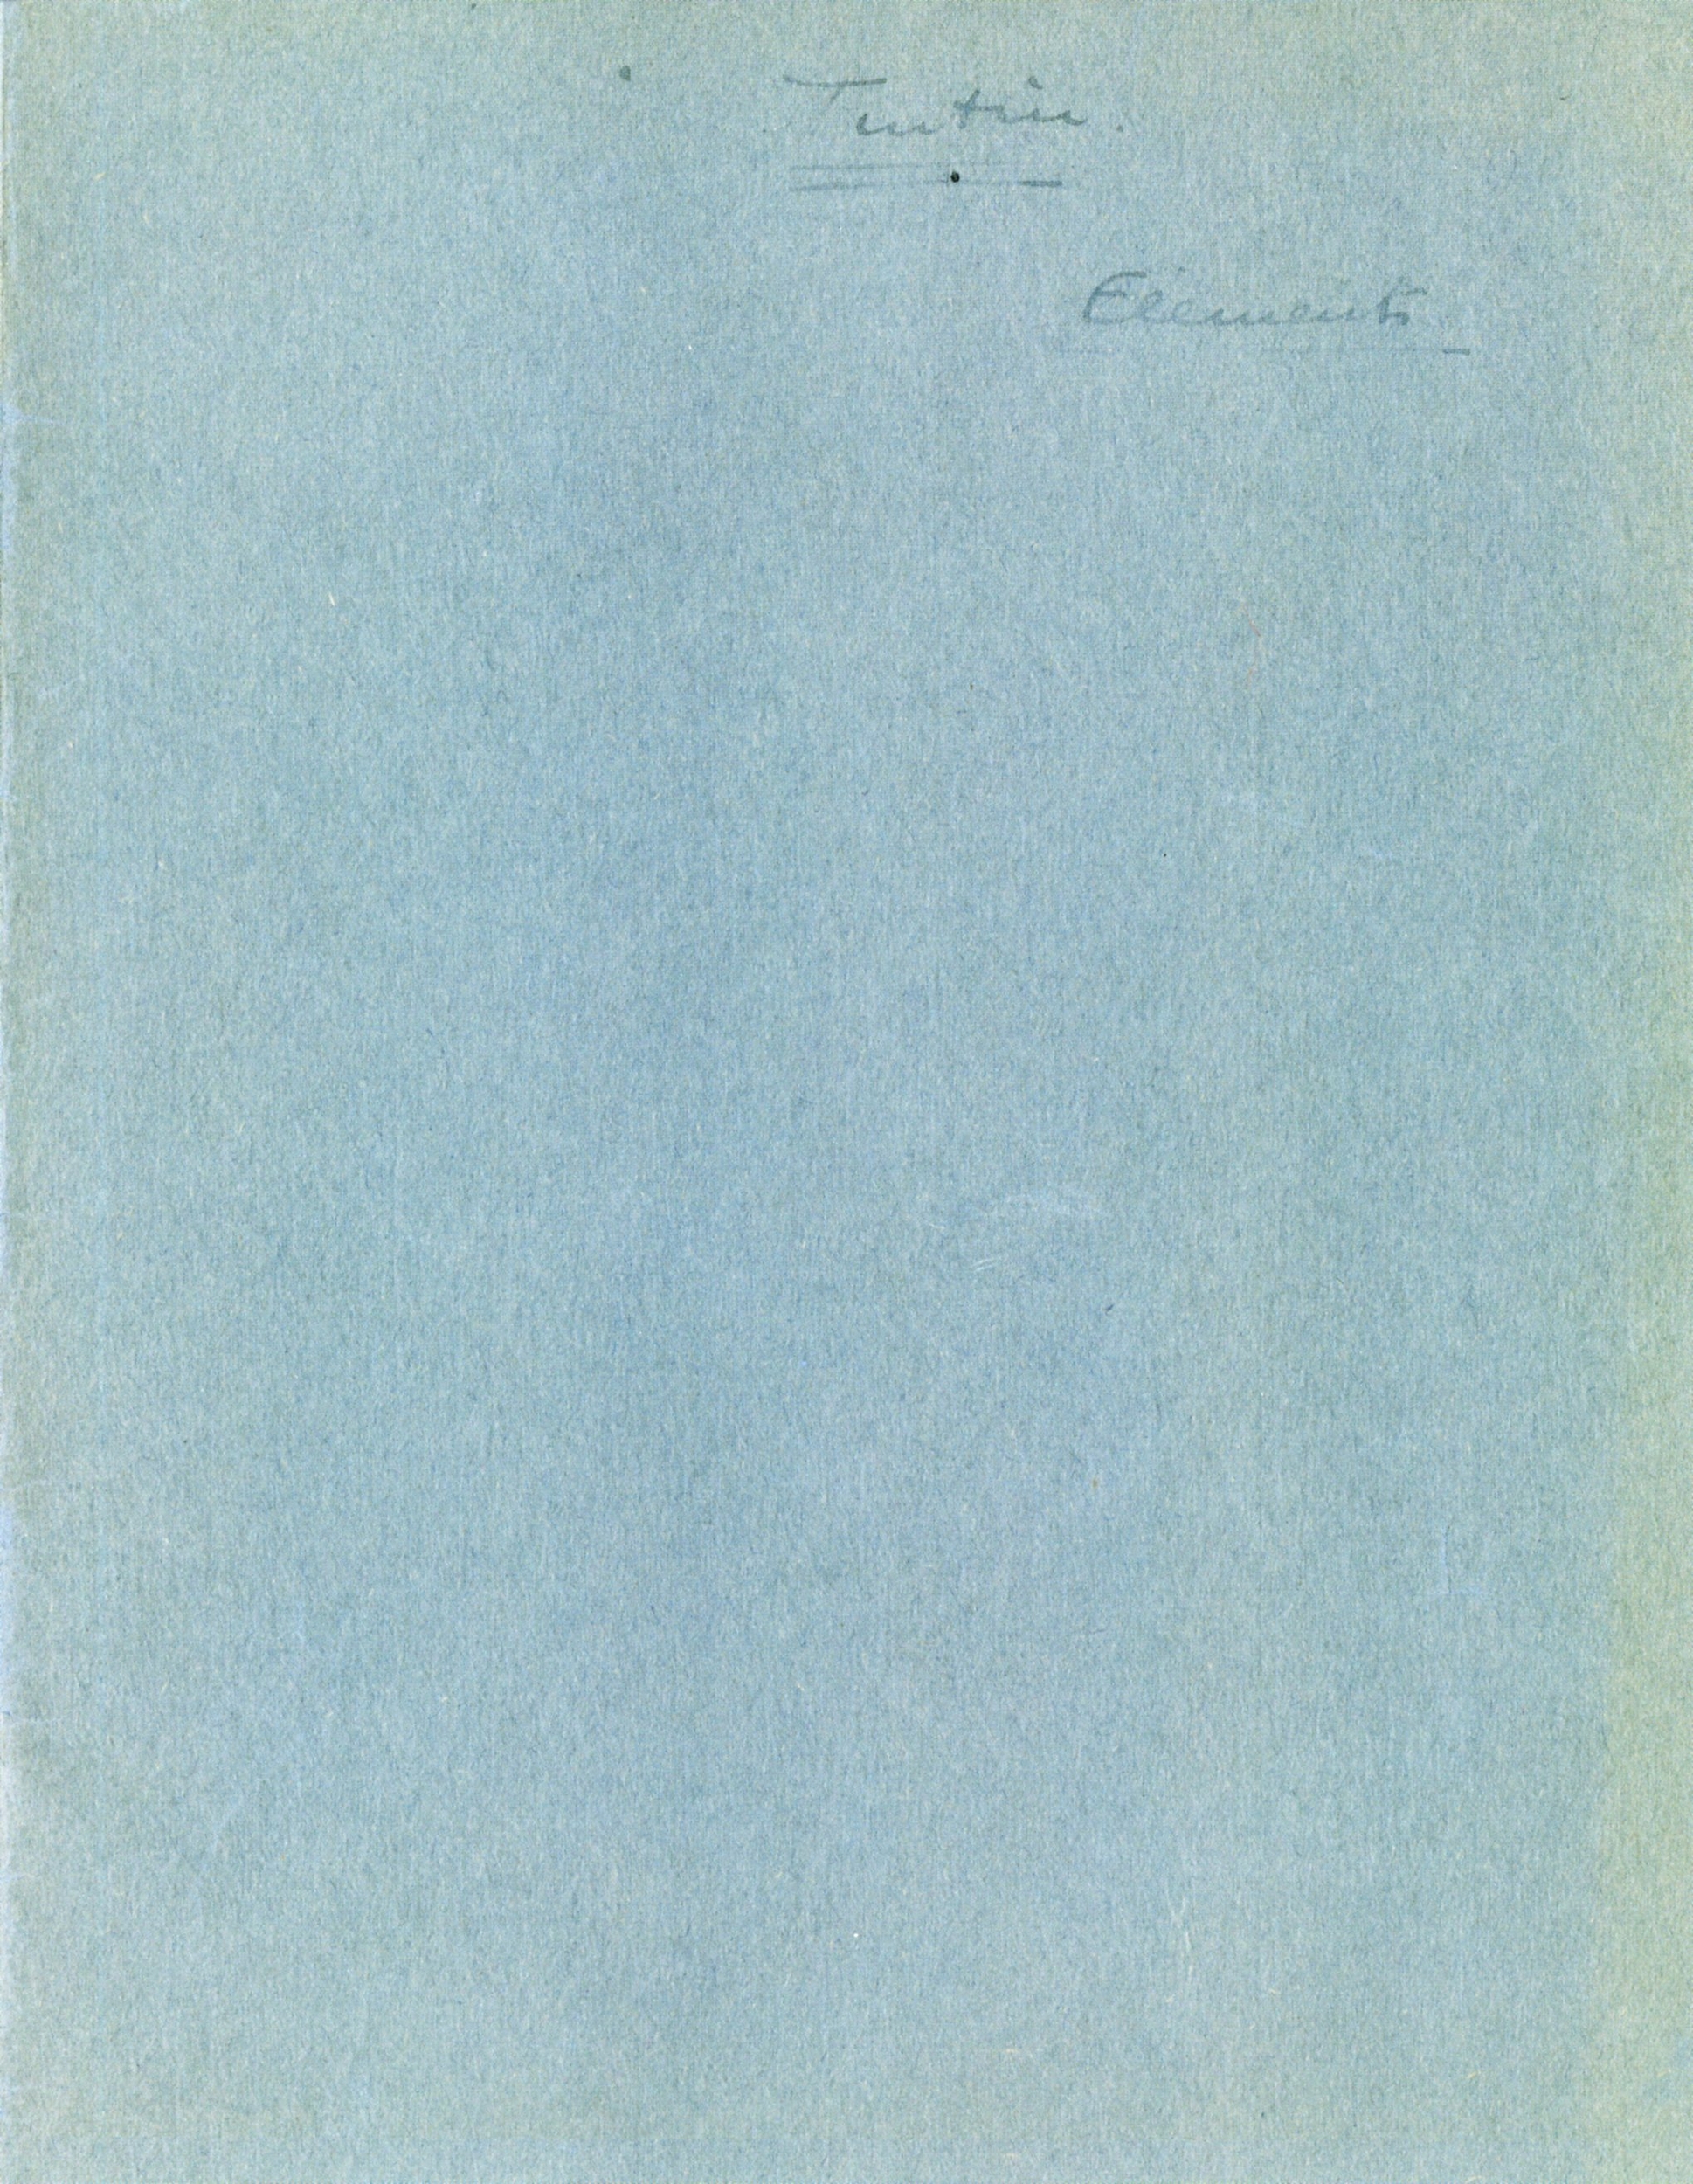 Fac-similé-cahier-brouillon-archive-illustration-Hergé-1934-moulinsart-casterman-lemasterbrockers